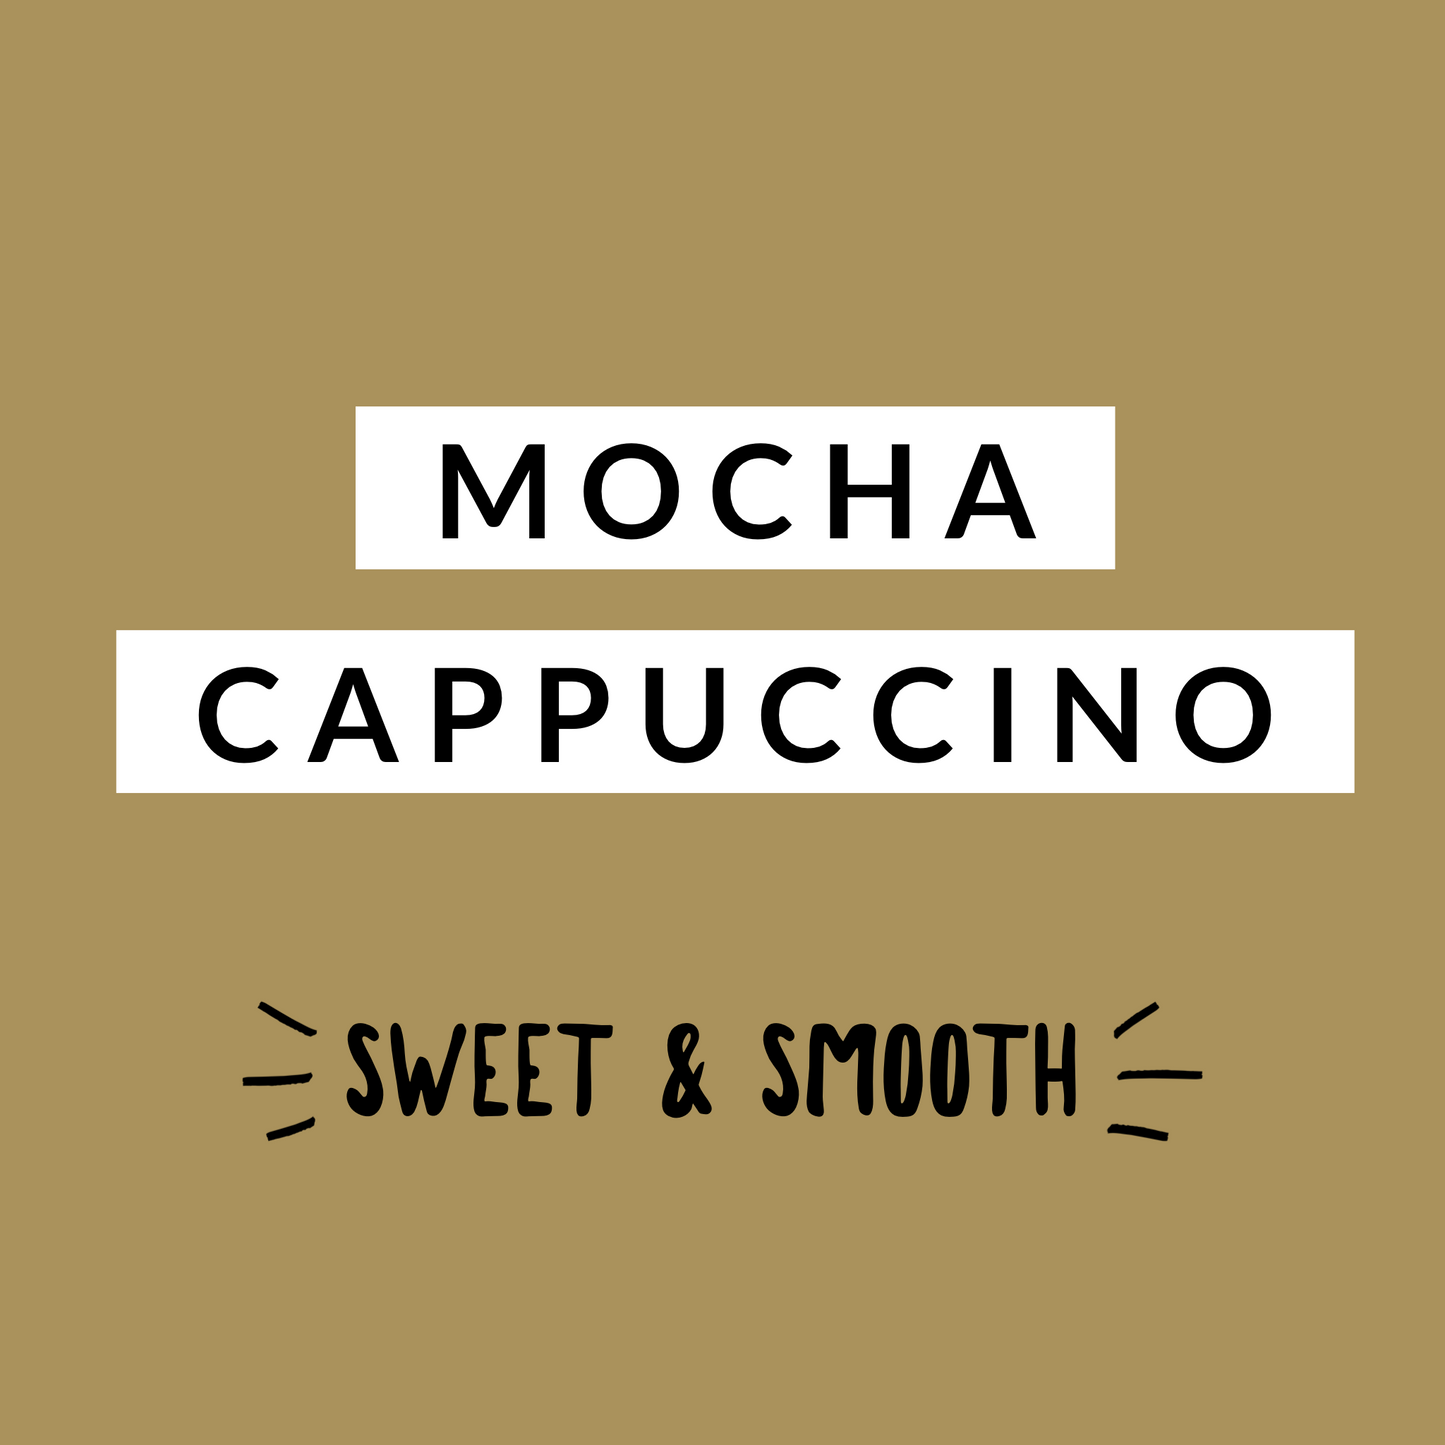 Mocha Cappuccino